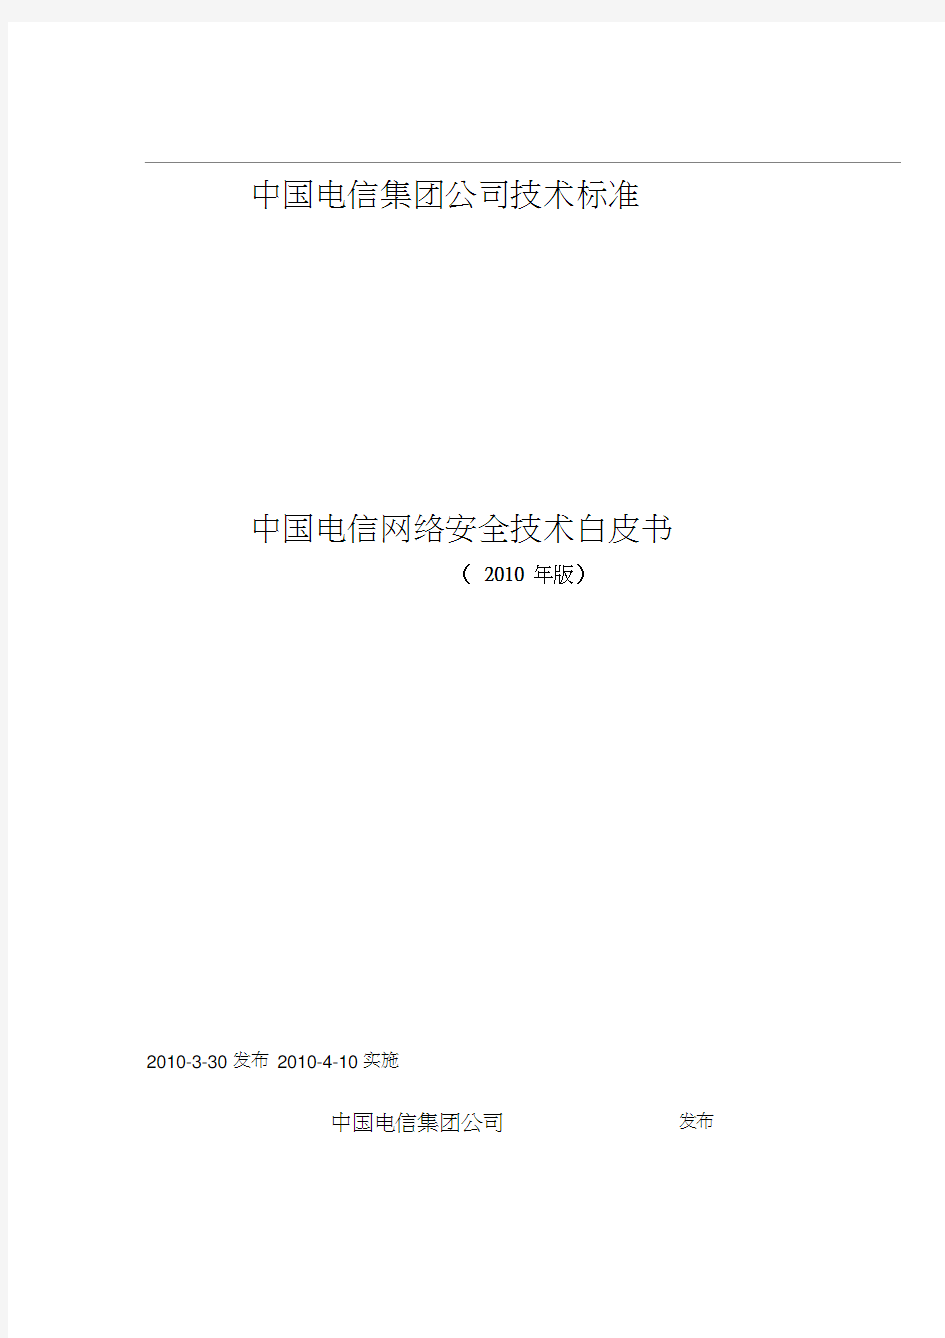 (安全生产)中国电信网络安全技术白皮书中国电信集团(技术部拟文